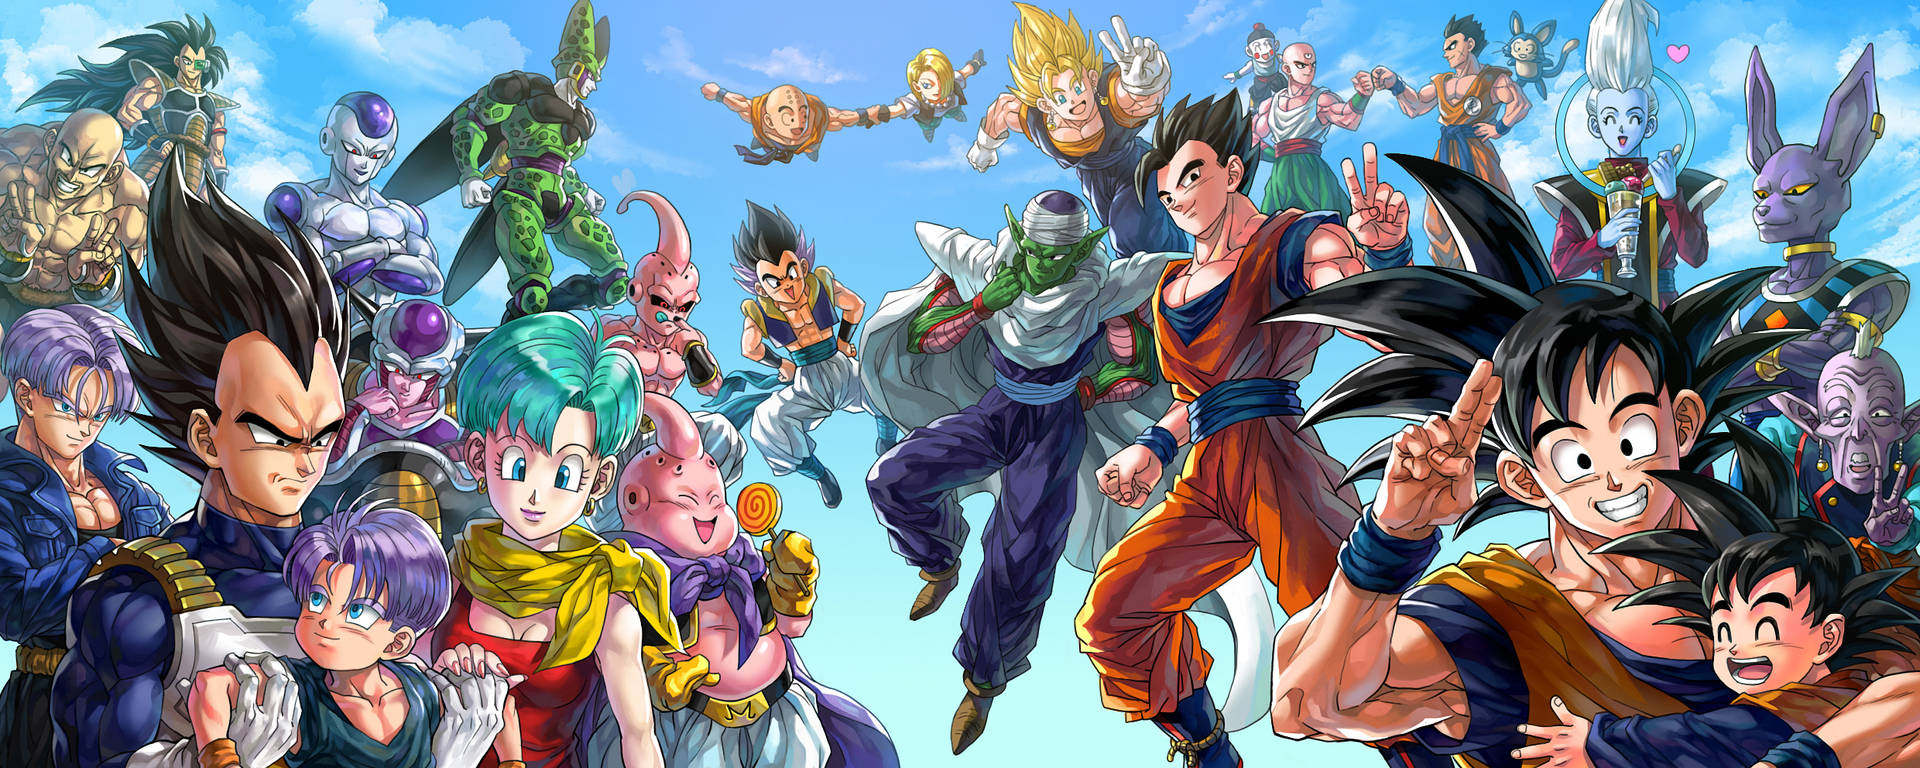 Dragon Ball Z Family Wallpaper